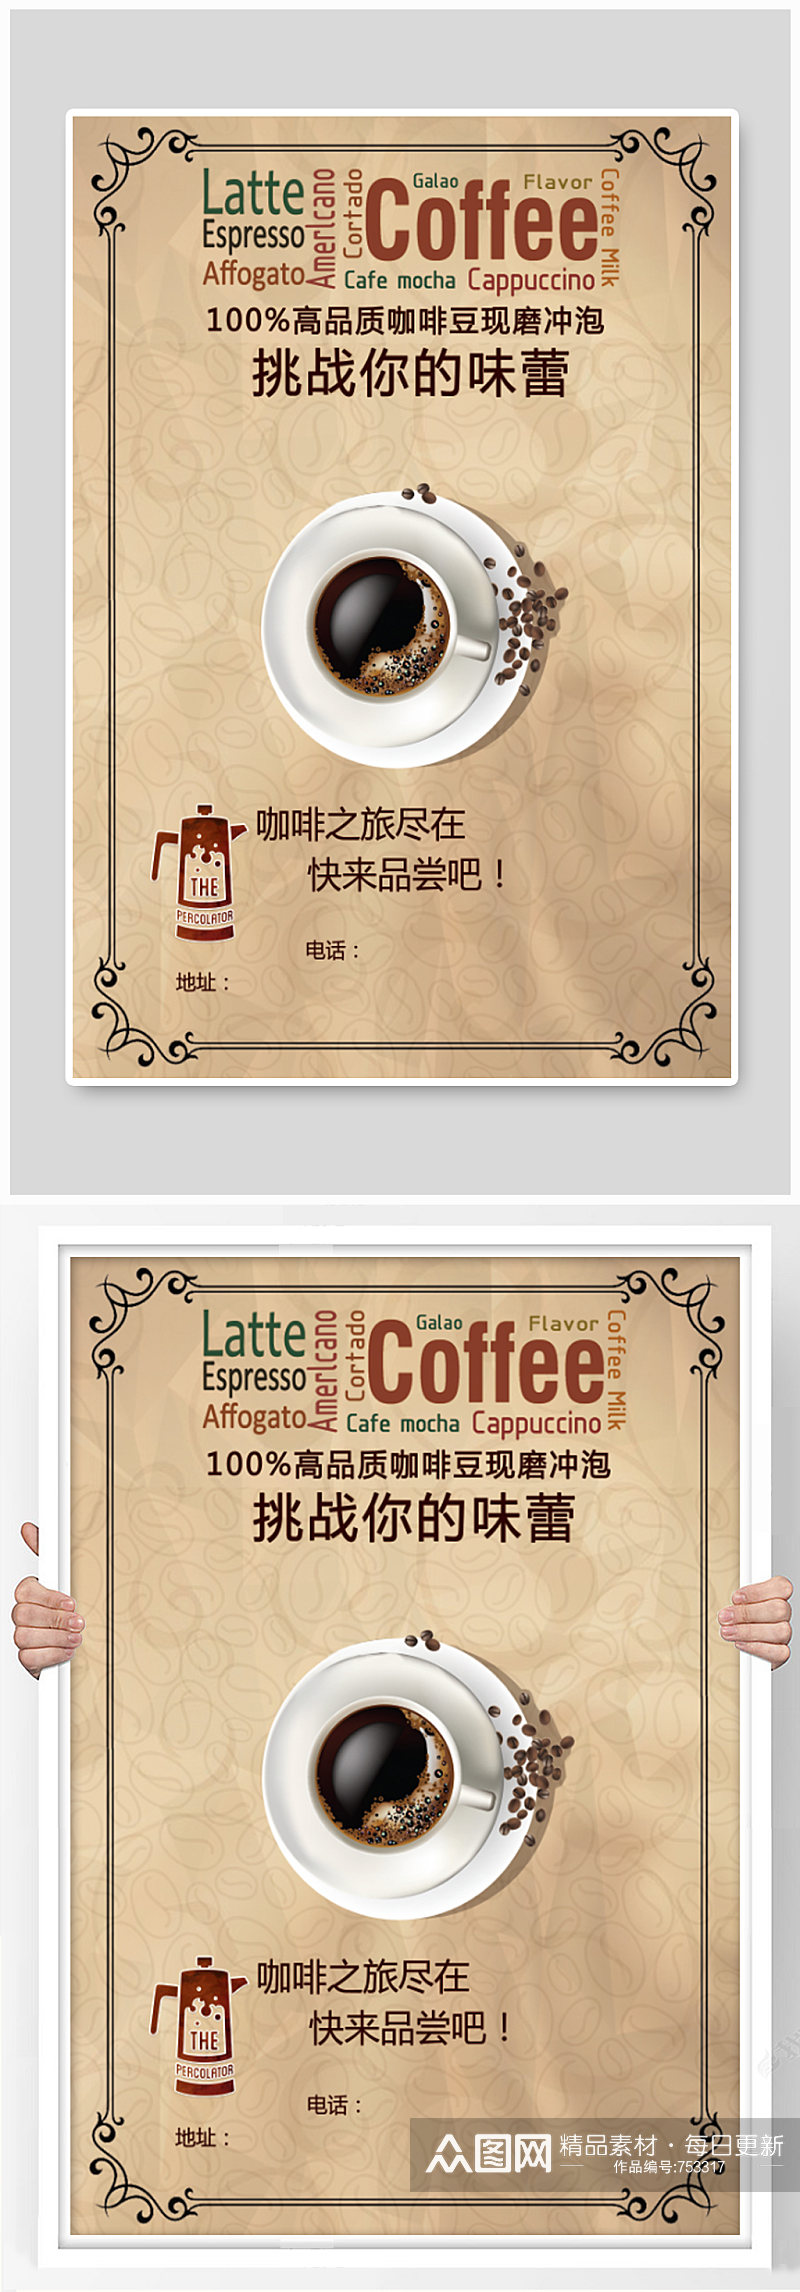 咖啡店宣传海报设计素材